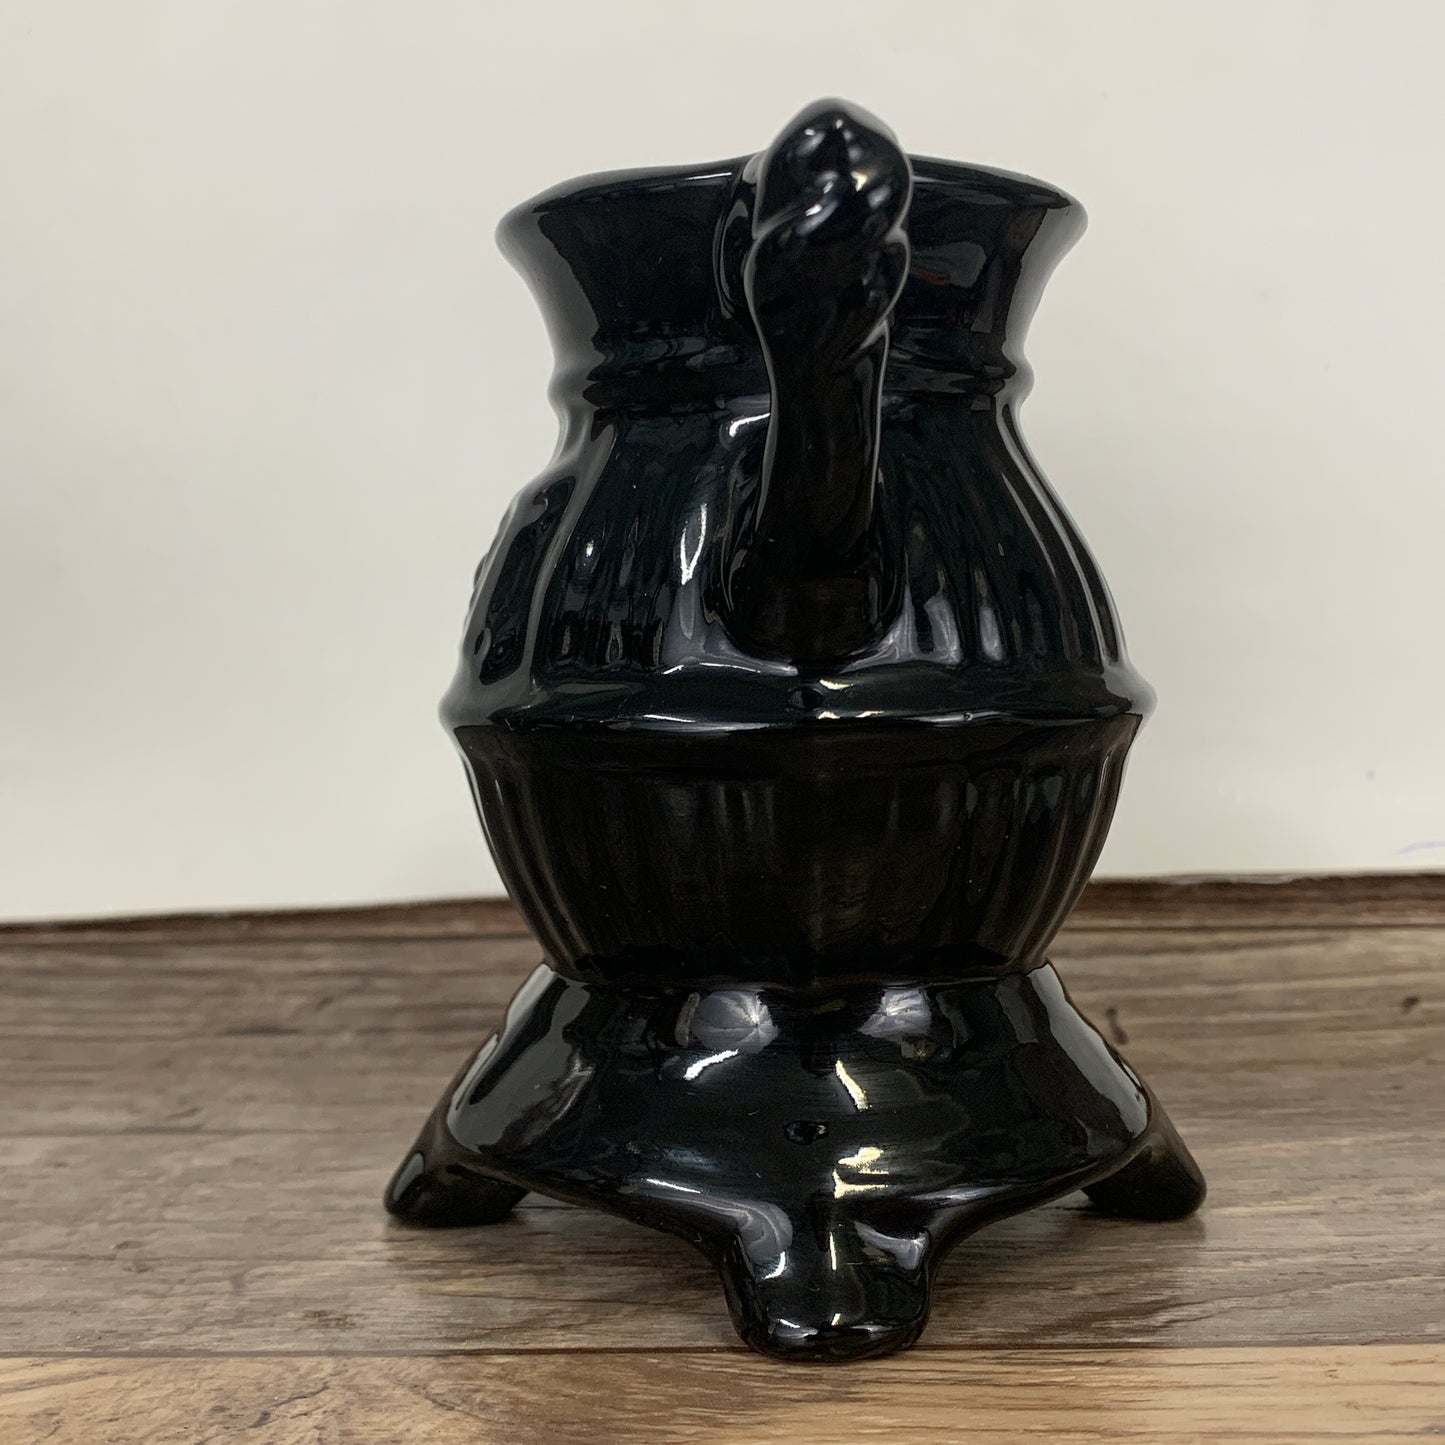 Pot Belly Stove Shaped Pitcher, Black Ceramic Pitcher